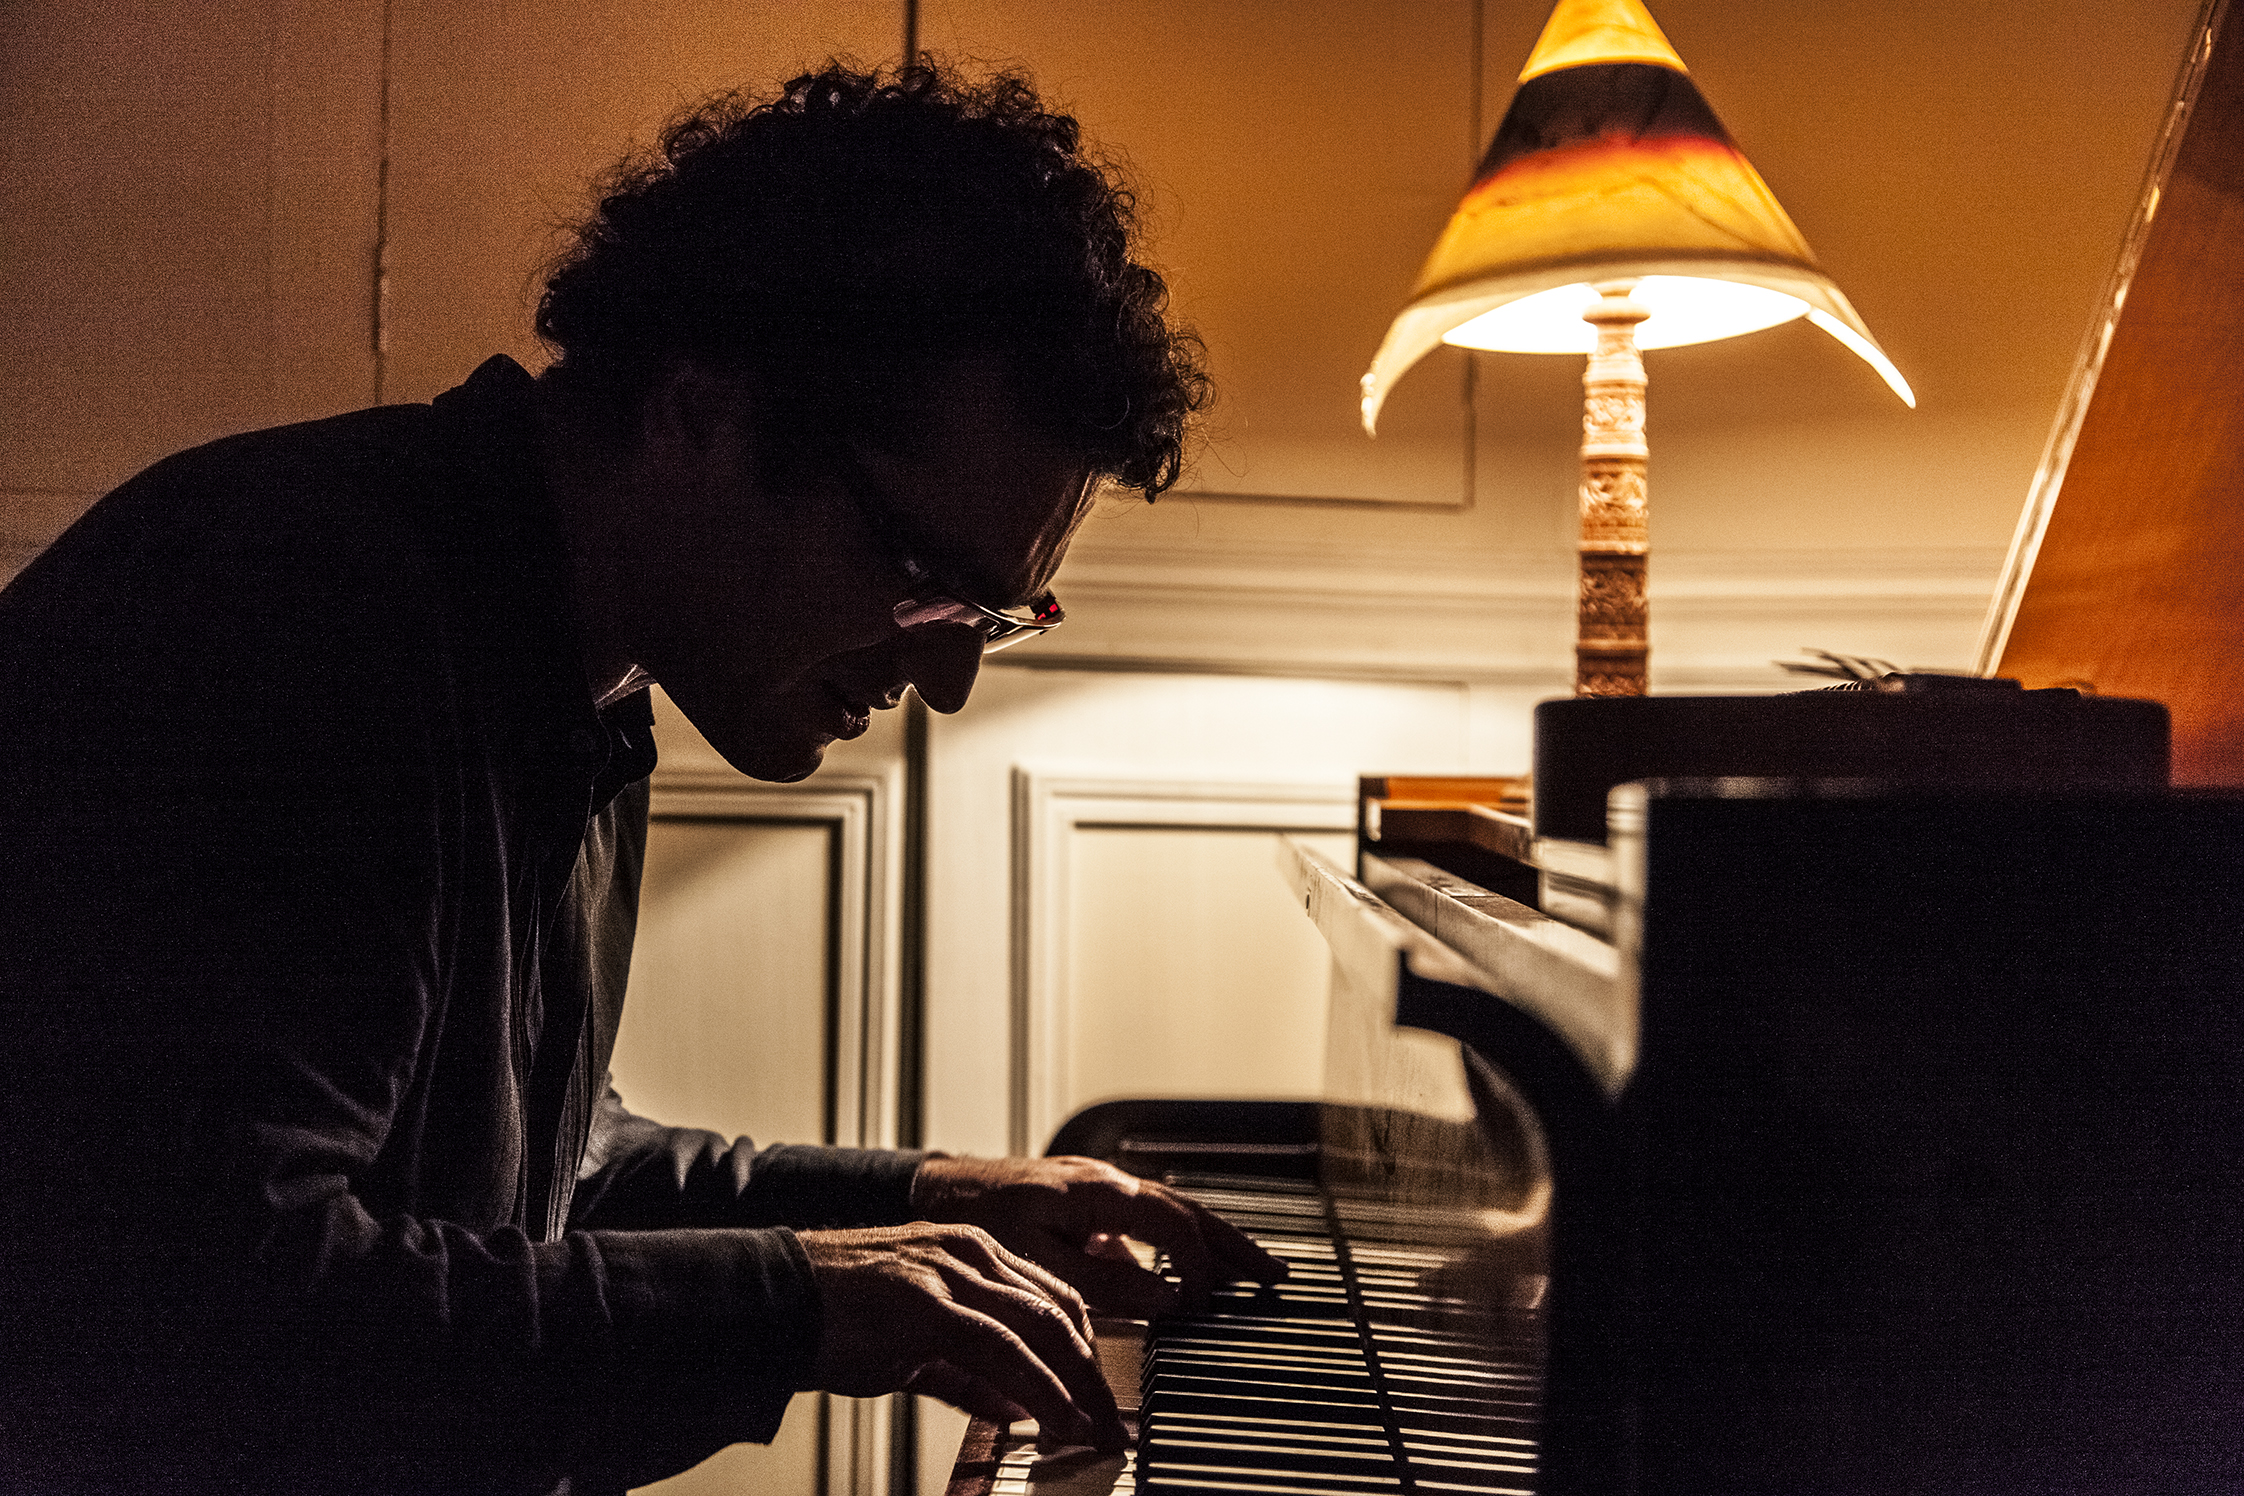 آرشید آذرین پای پیانویی در پاریس 13 مارس 2014 عکس از الن الورزا